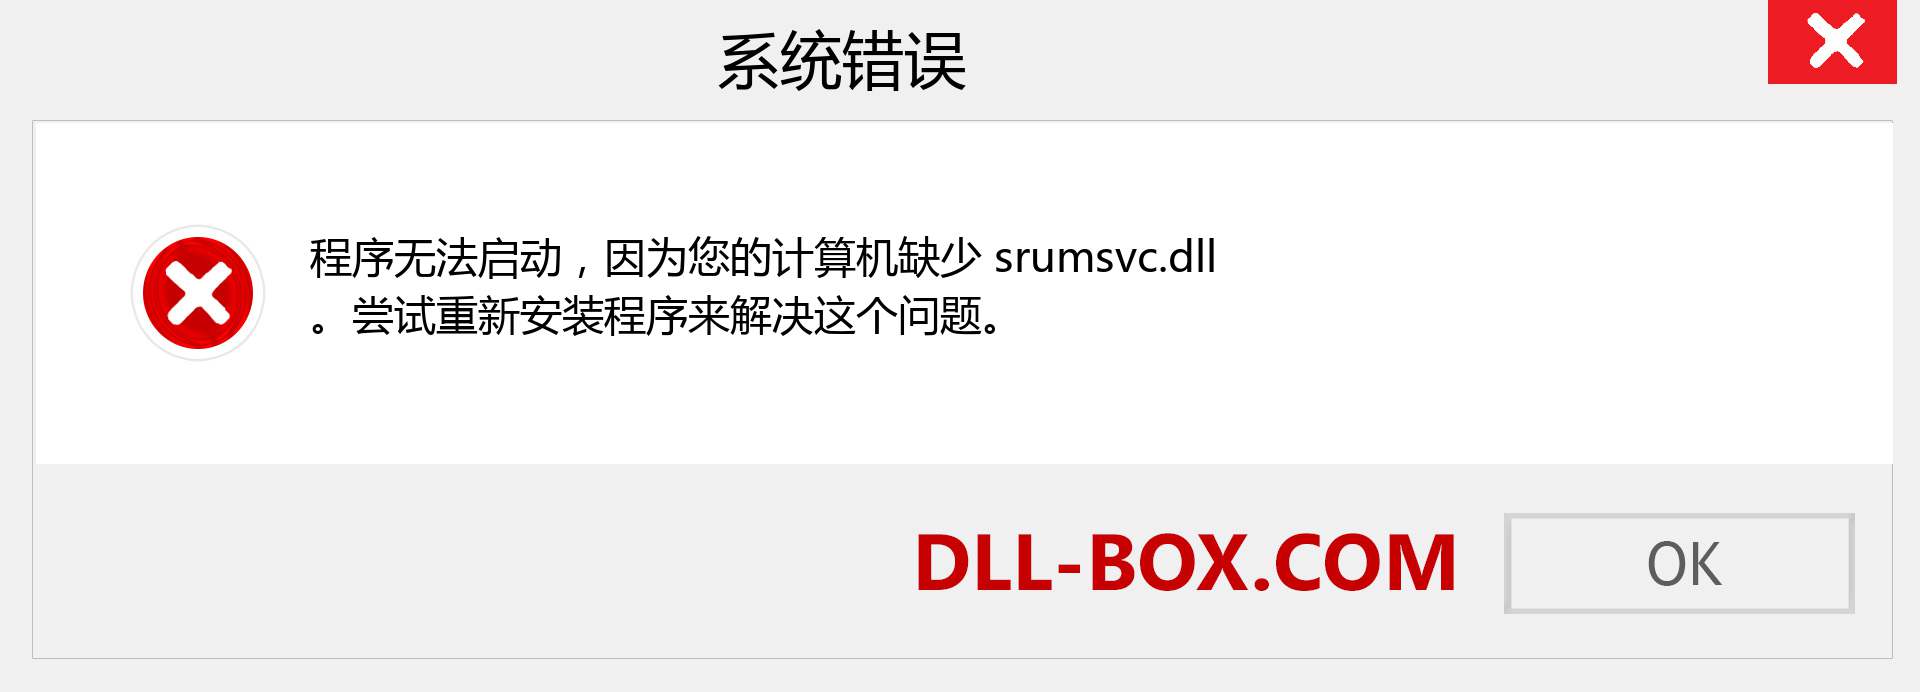 srumsvc.dll 文件丢失？。 适用于 Windows 7、8、10 的下载 - 修复 Windows、照片、图像上的 srumsvc dll 丢失错误